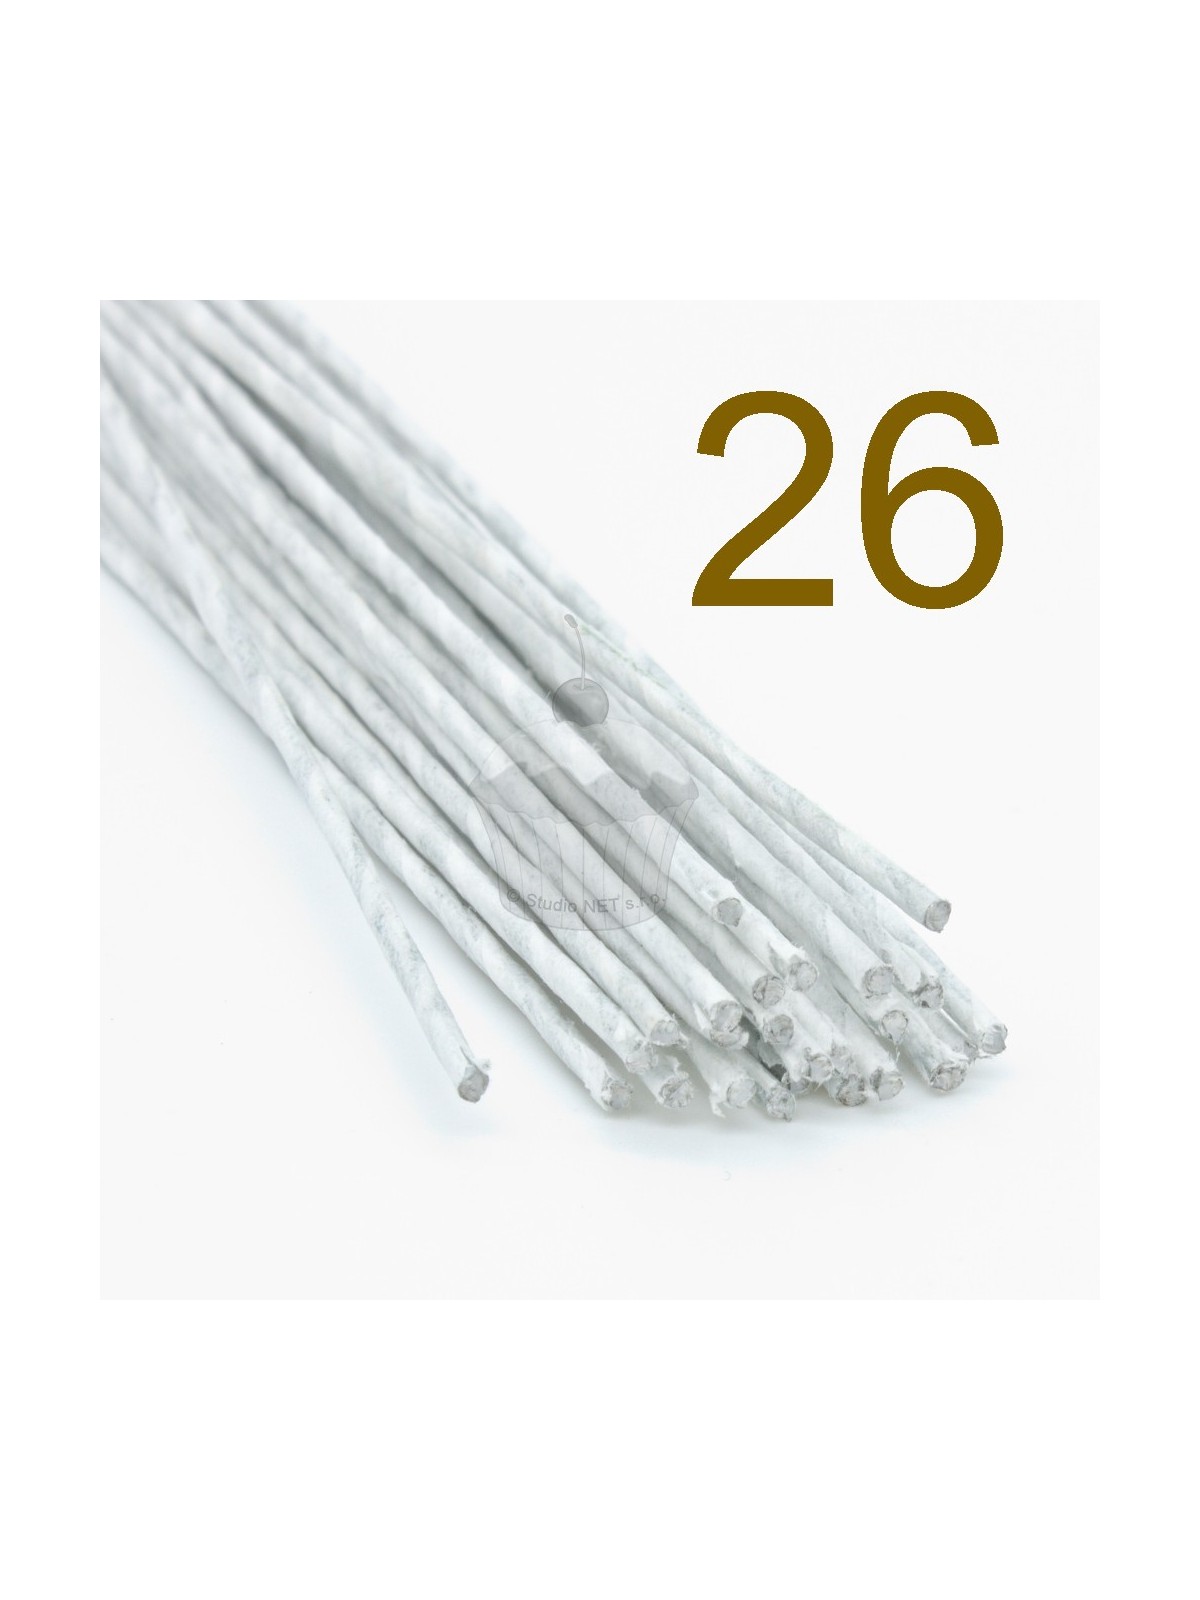 Caketools - 26  aranžovací drátky bílé - 50ks